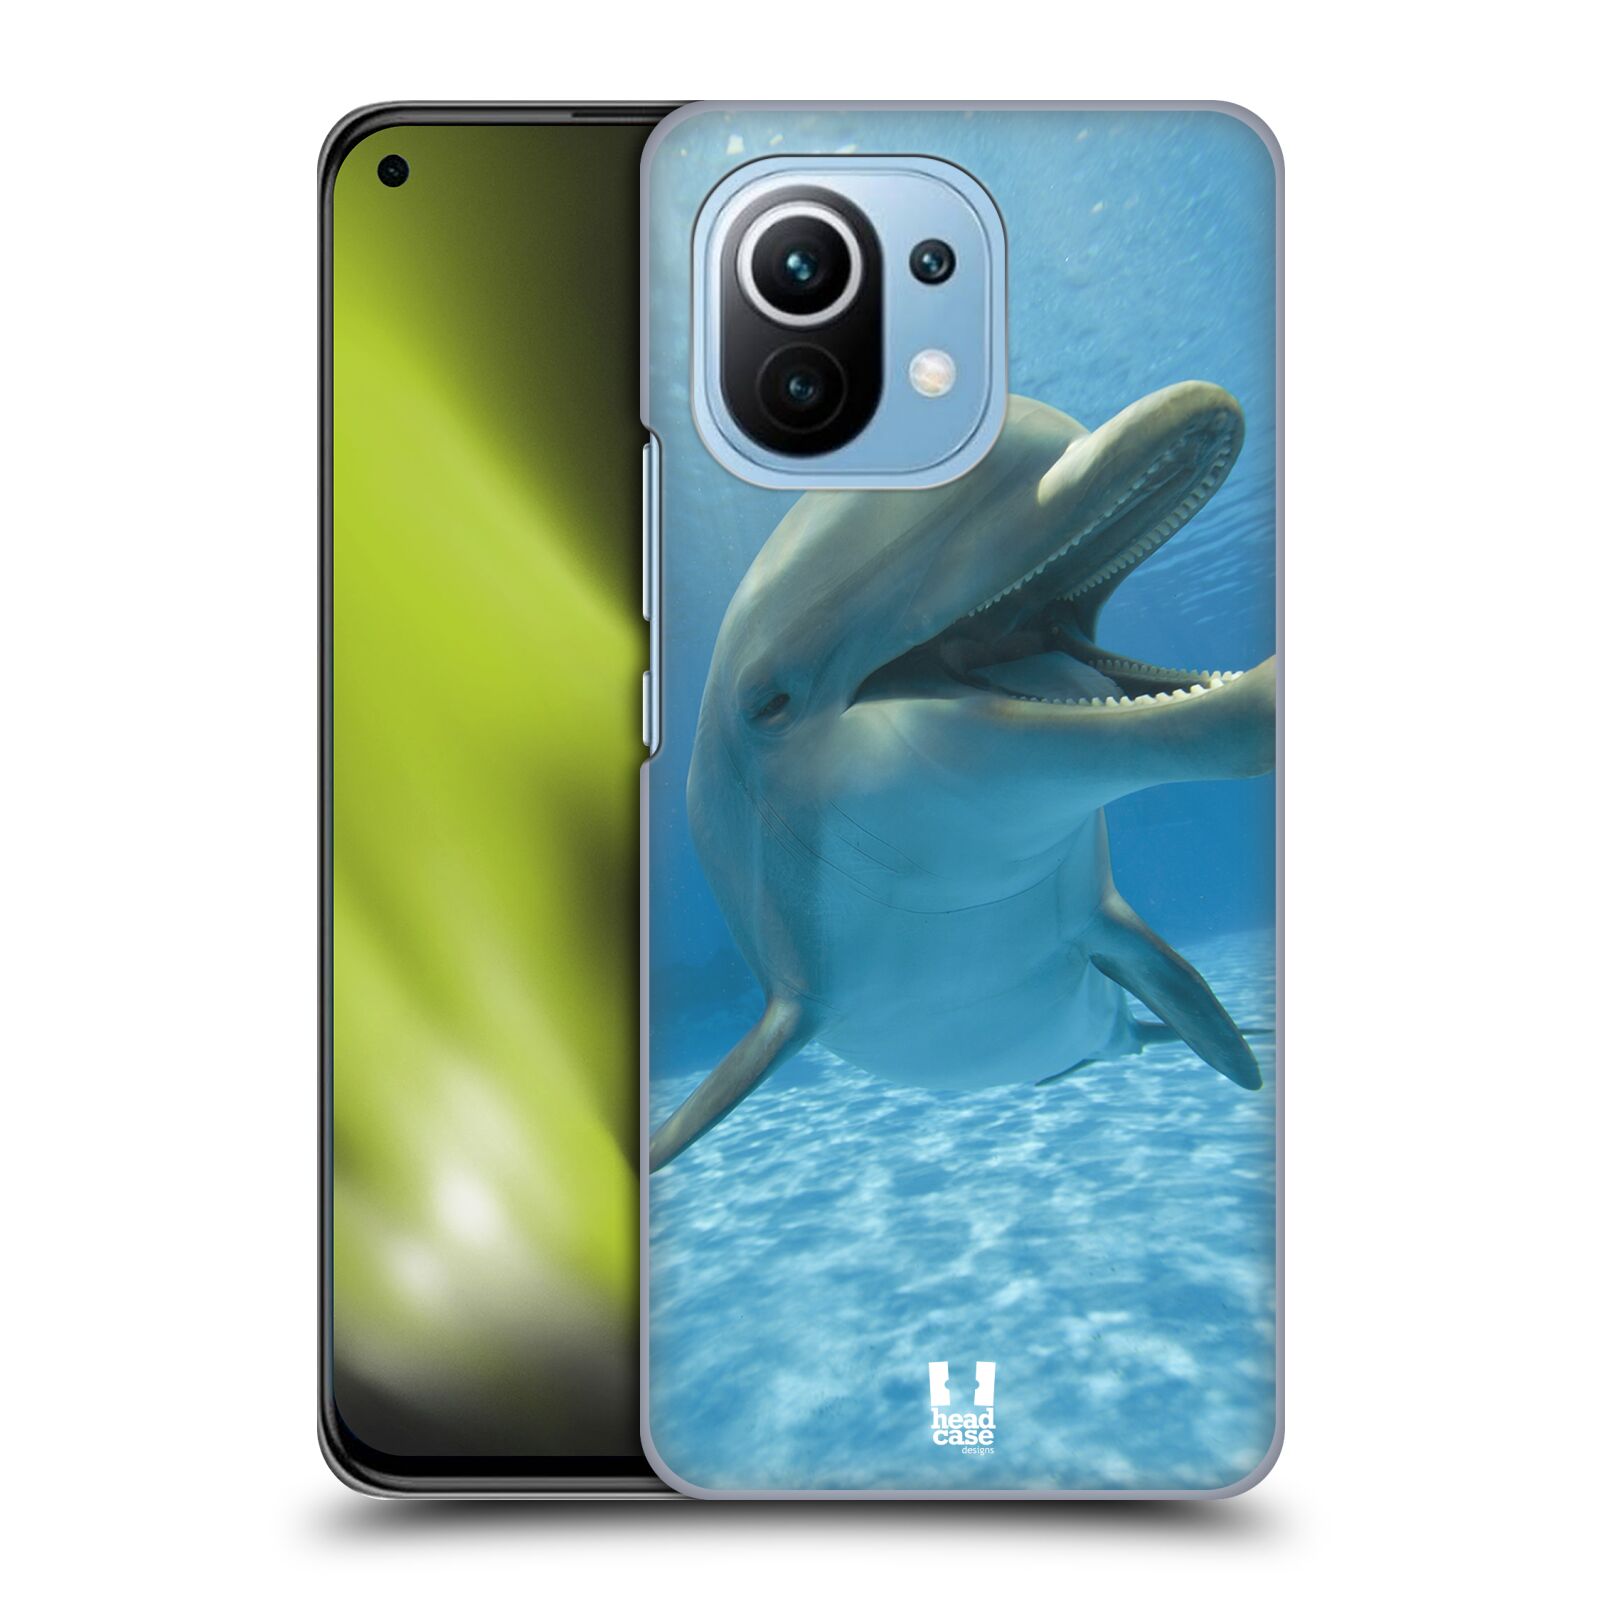 Zadní obal pro mobil Xiaomi Mi 11 - HEAD CASE - Svět zvířat delfín v moři